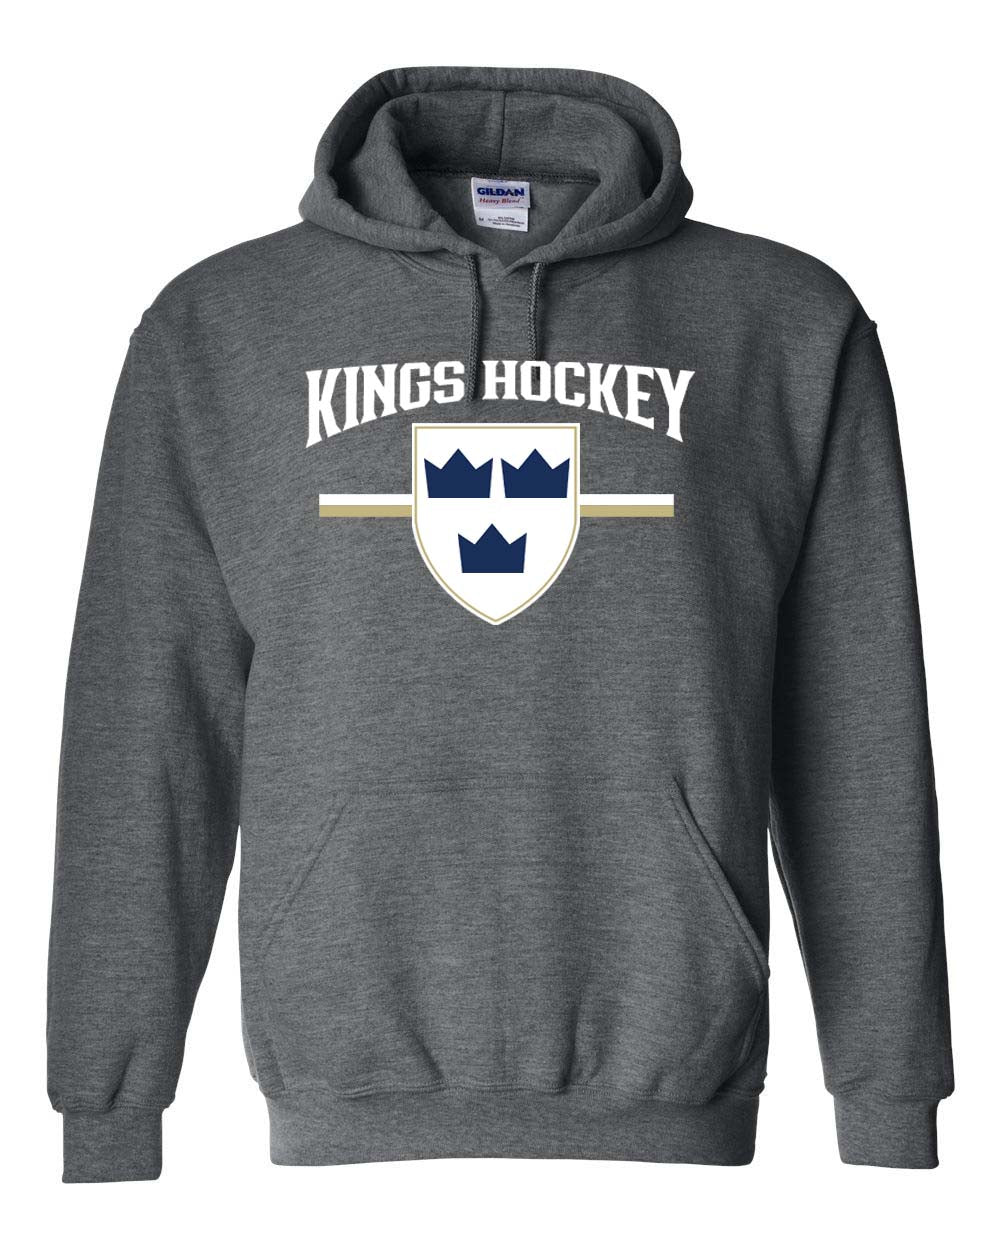 Kings Hockey Design 5 Hooded Sweatshirt